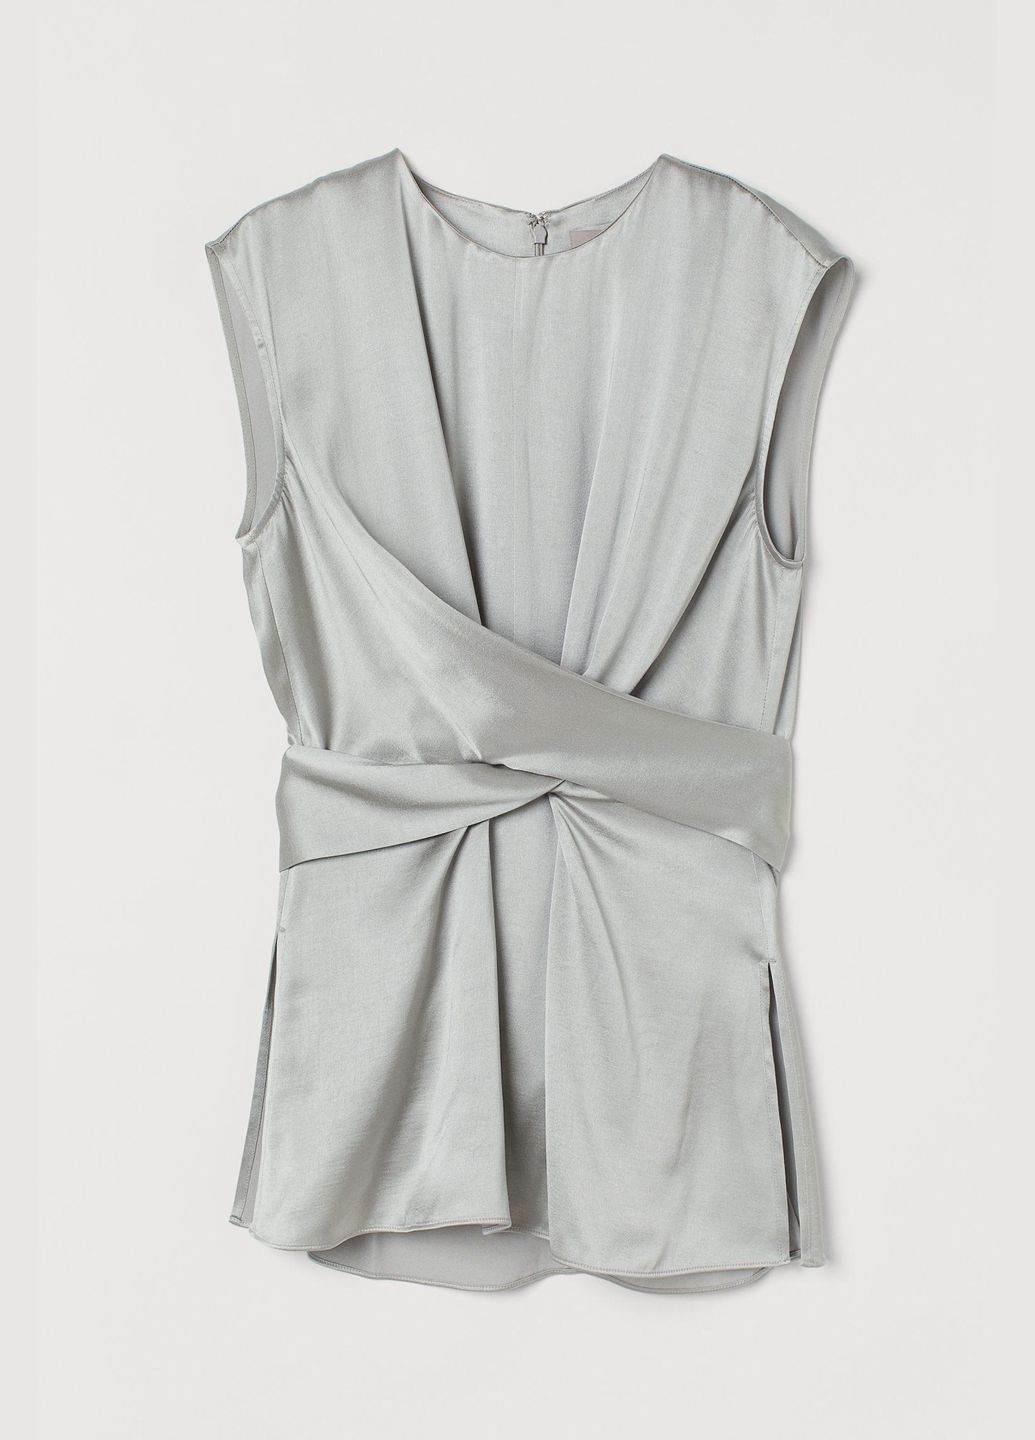 Серая блуза лето,серый, H&M